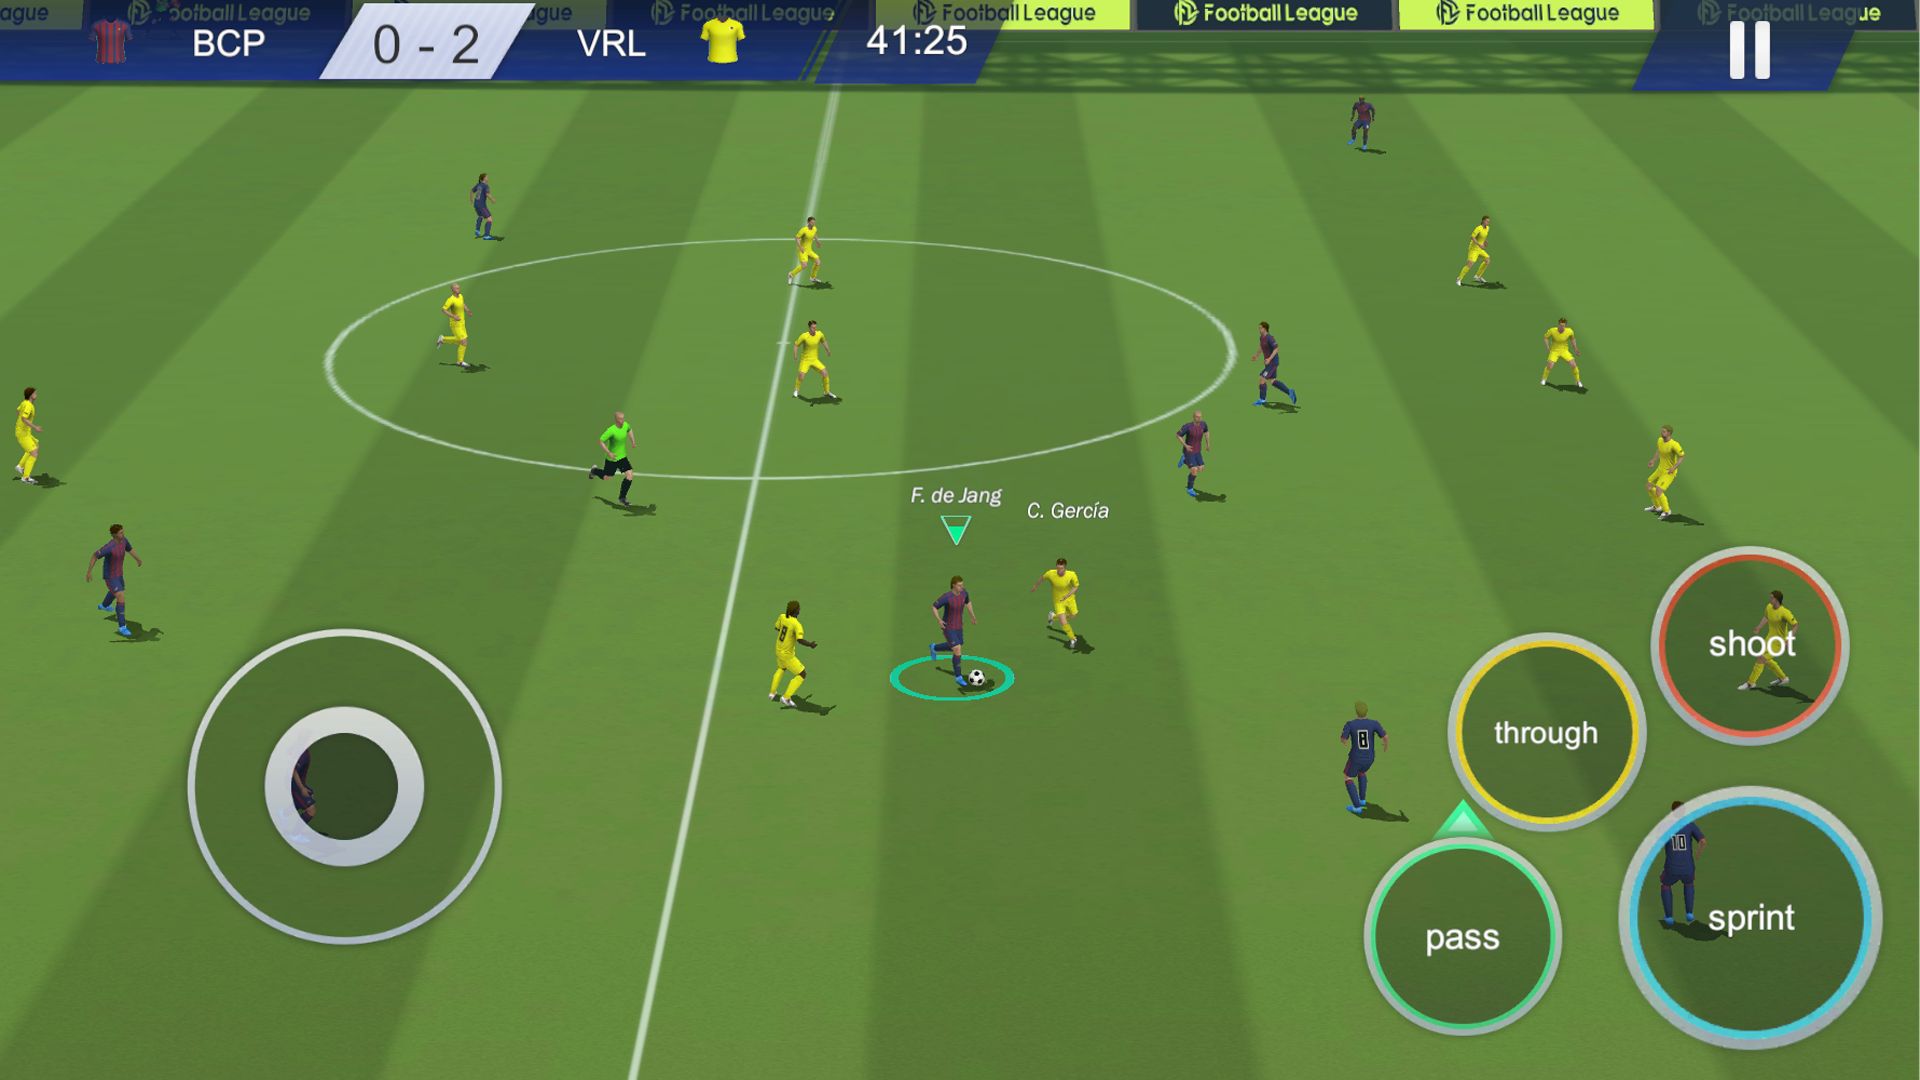 Jogos de Futebol APK (Android Game) - Baixar Grátis